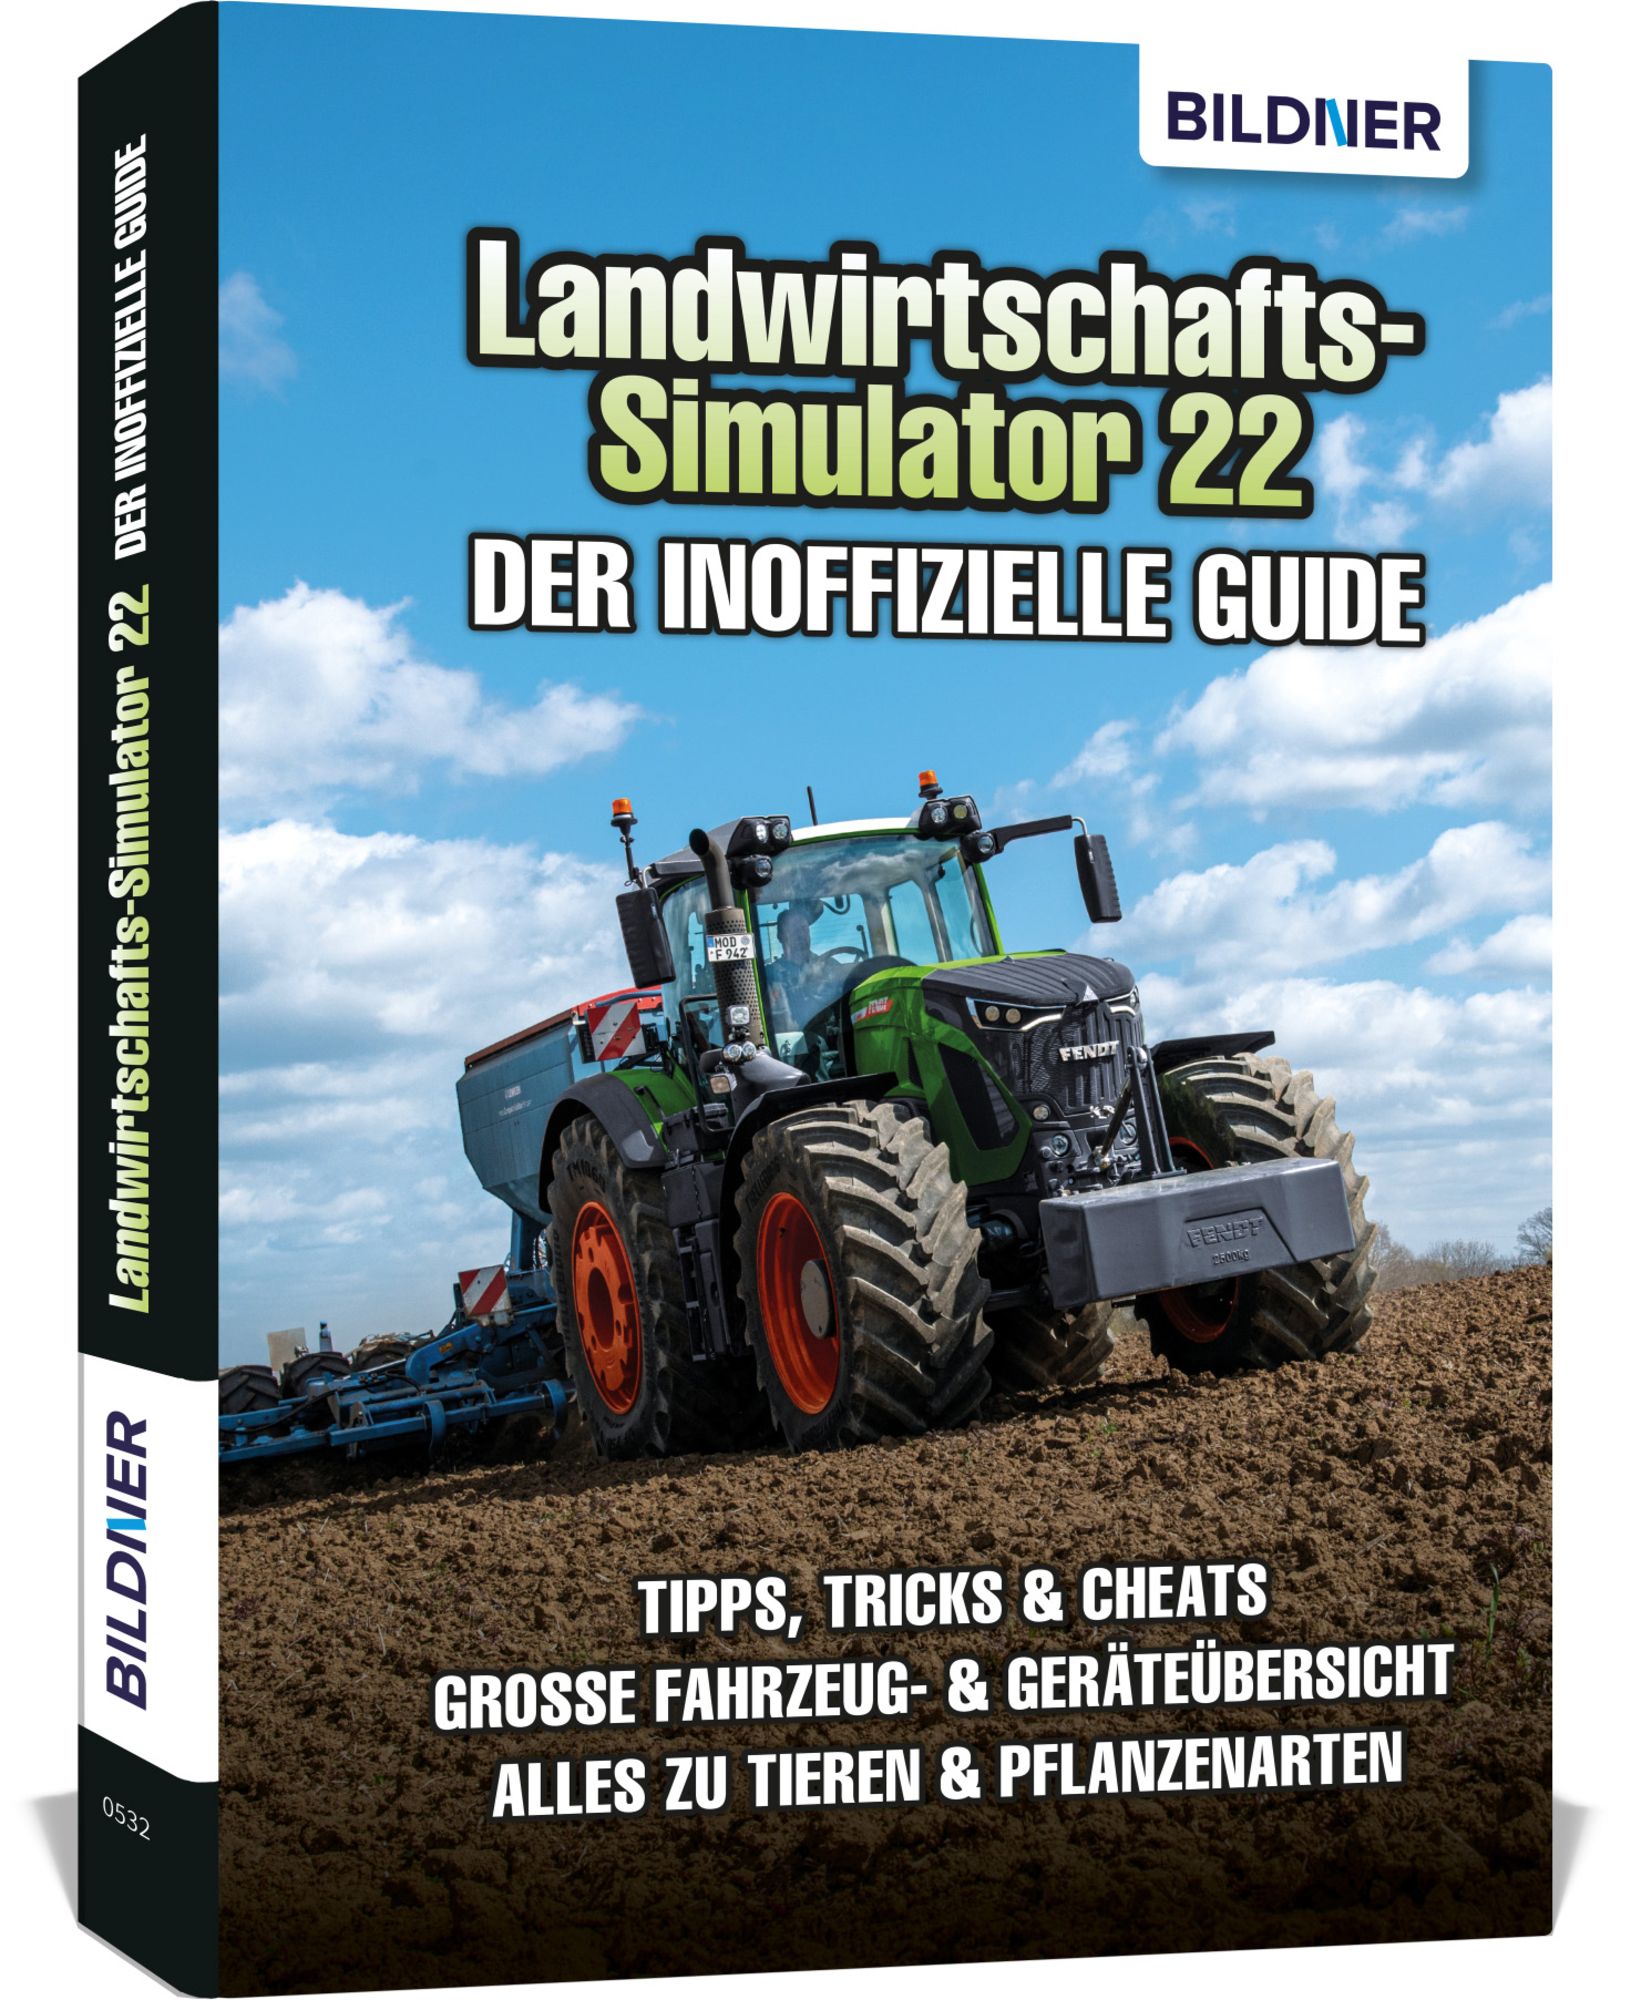 Landwirtschaftssimulator 22 - Der inoffizielle Guide' von 'Andreas